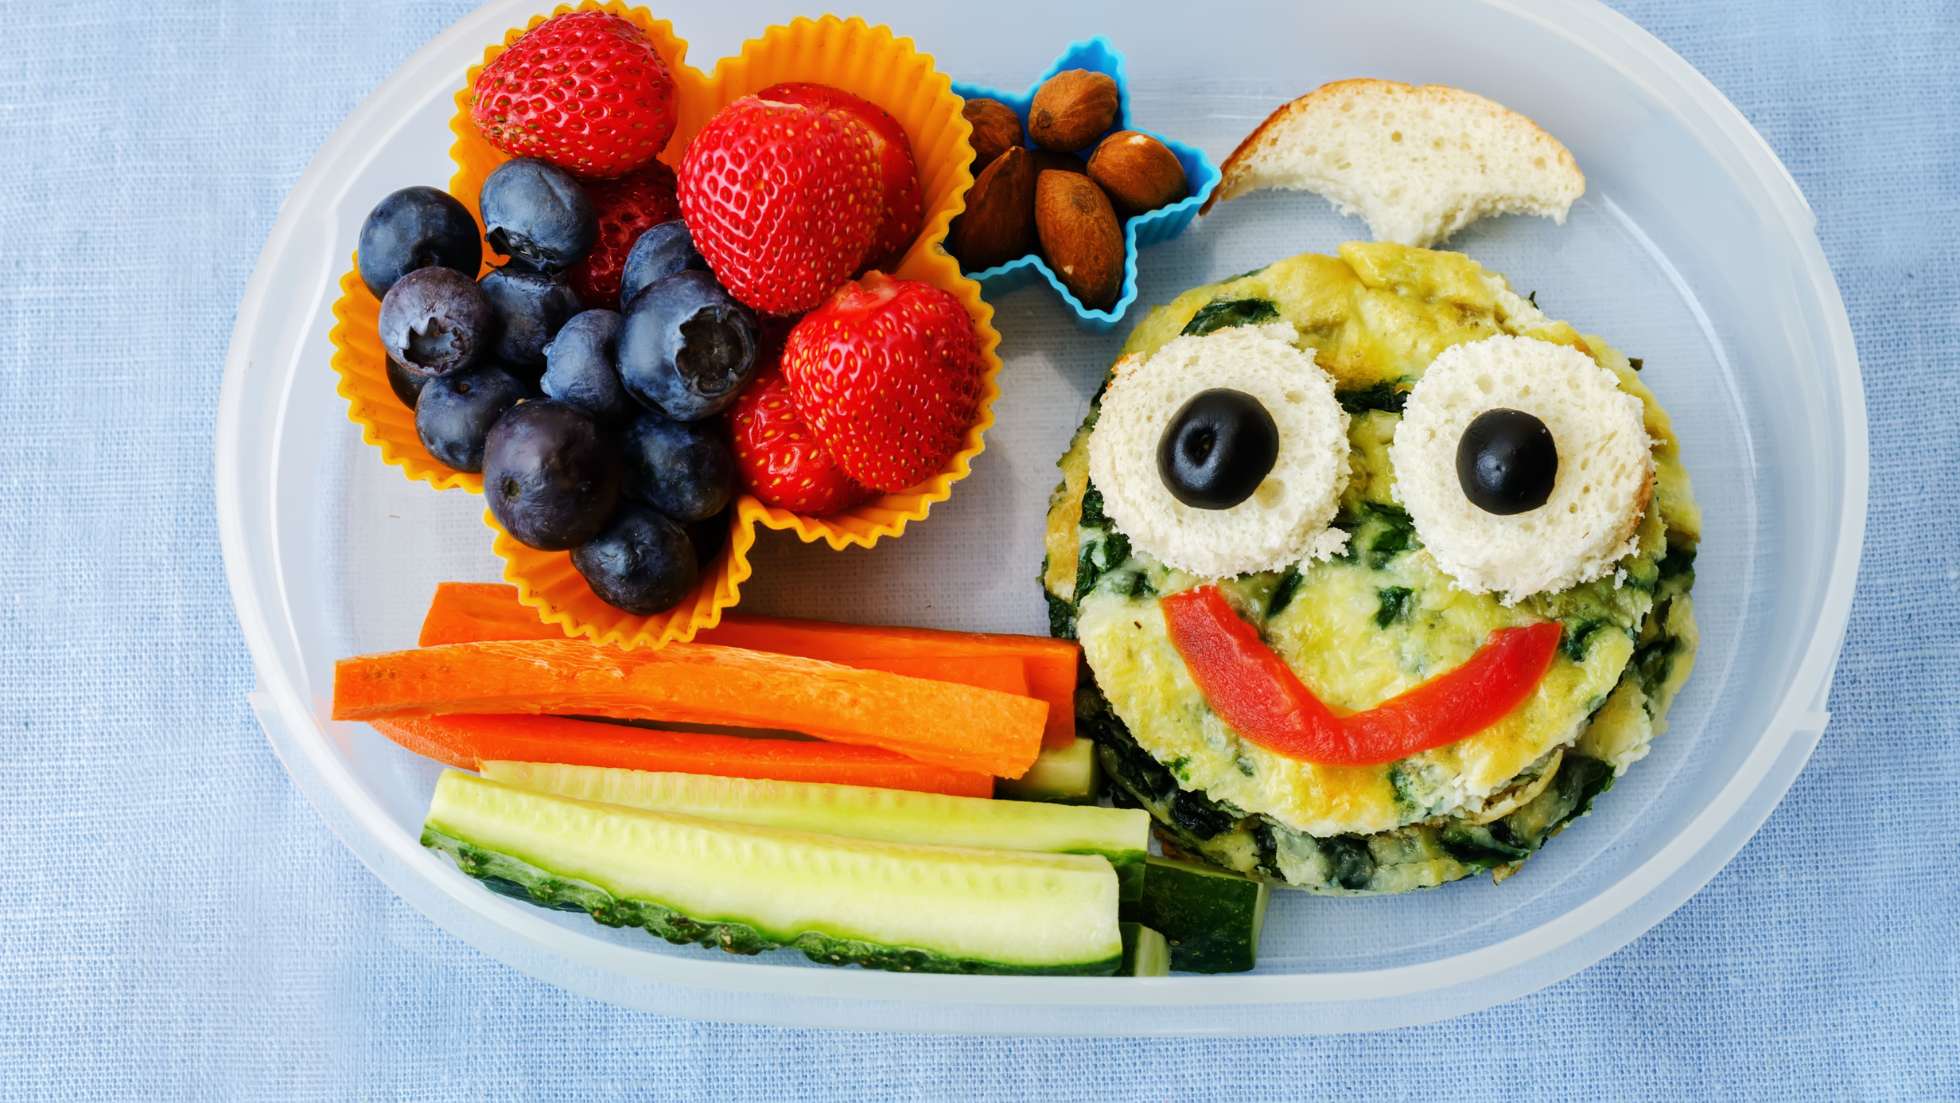 Pomysł na śniadanie dla dziecka do szkoły -zdjęcie ilustracyjne wpisu na bloga przedstawiające kanapkę przyponijącą buźkę, pokrojone warzywa i owoce w pojemniki